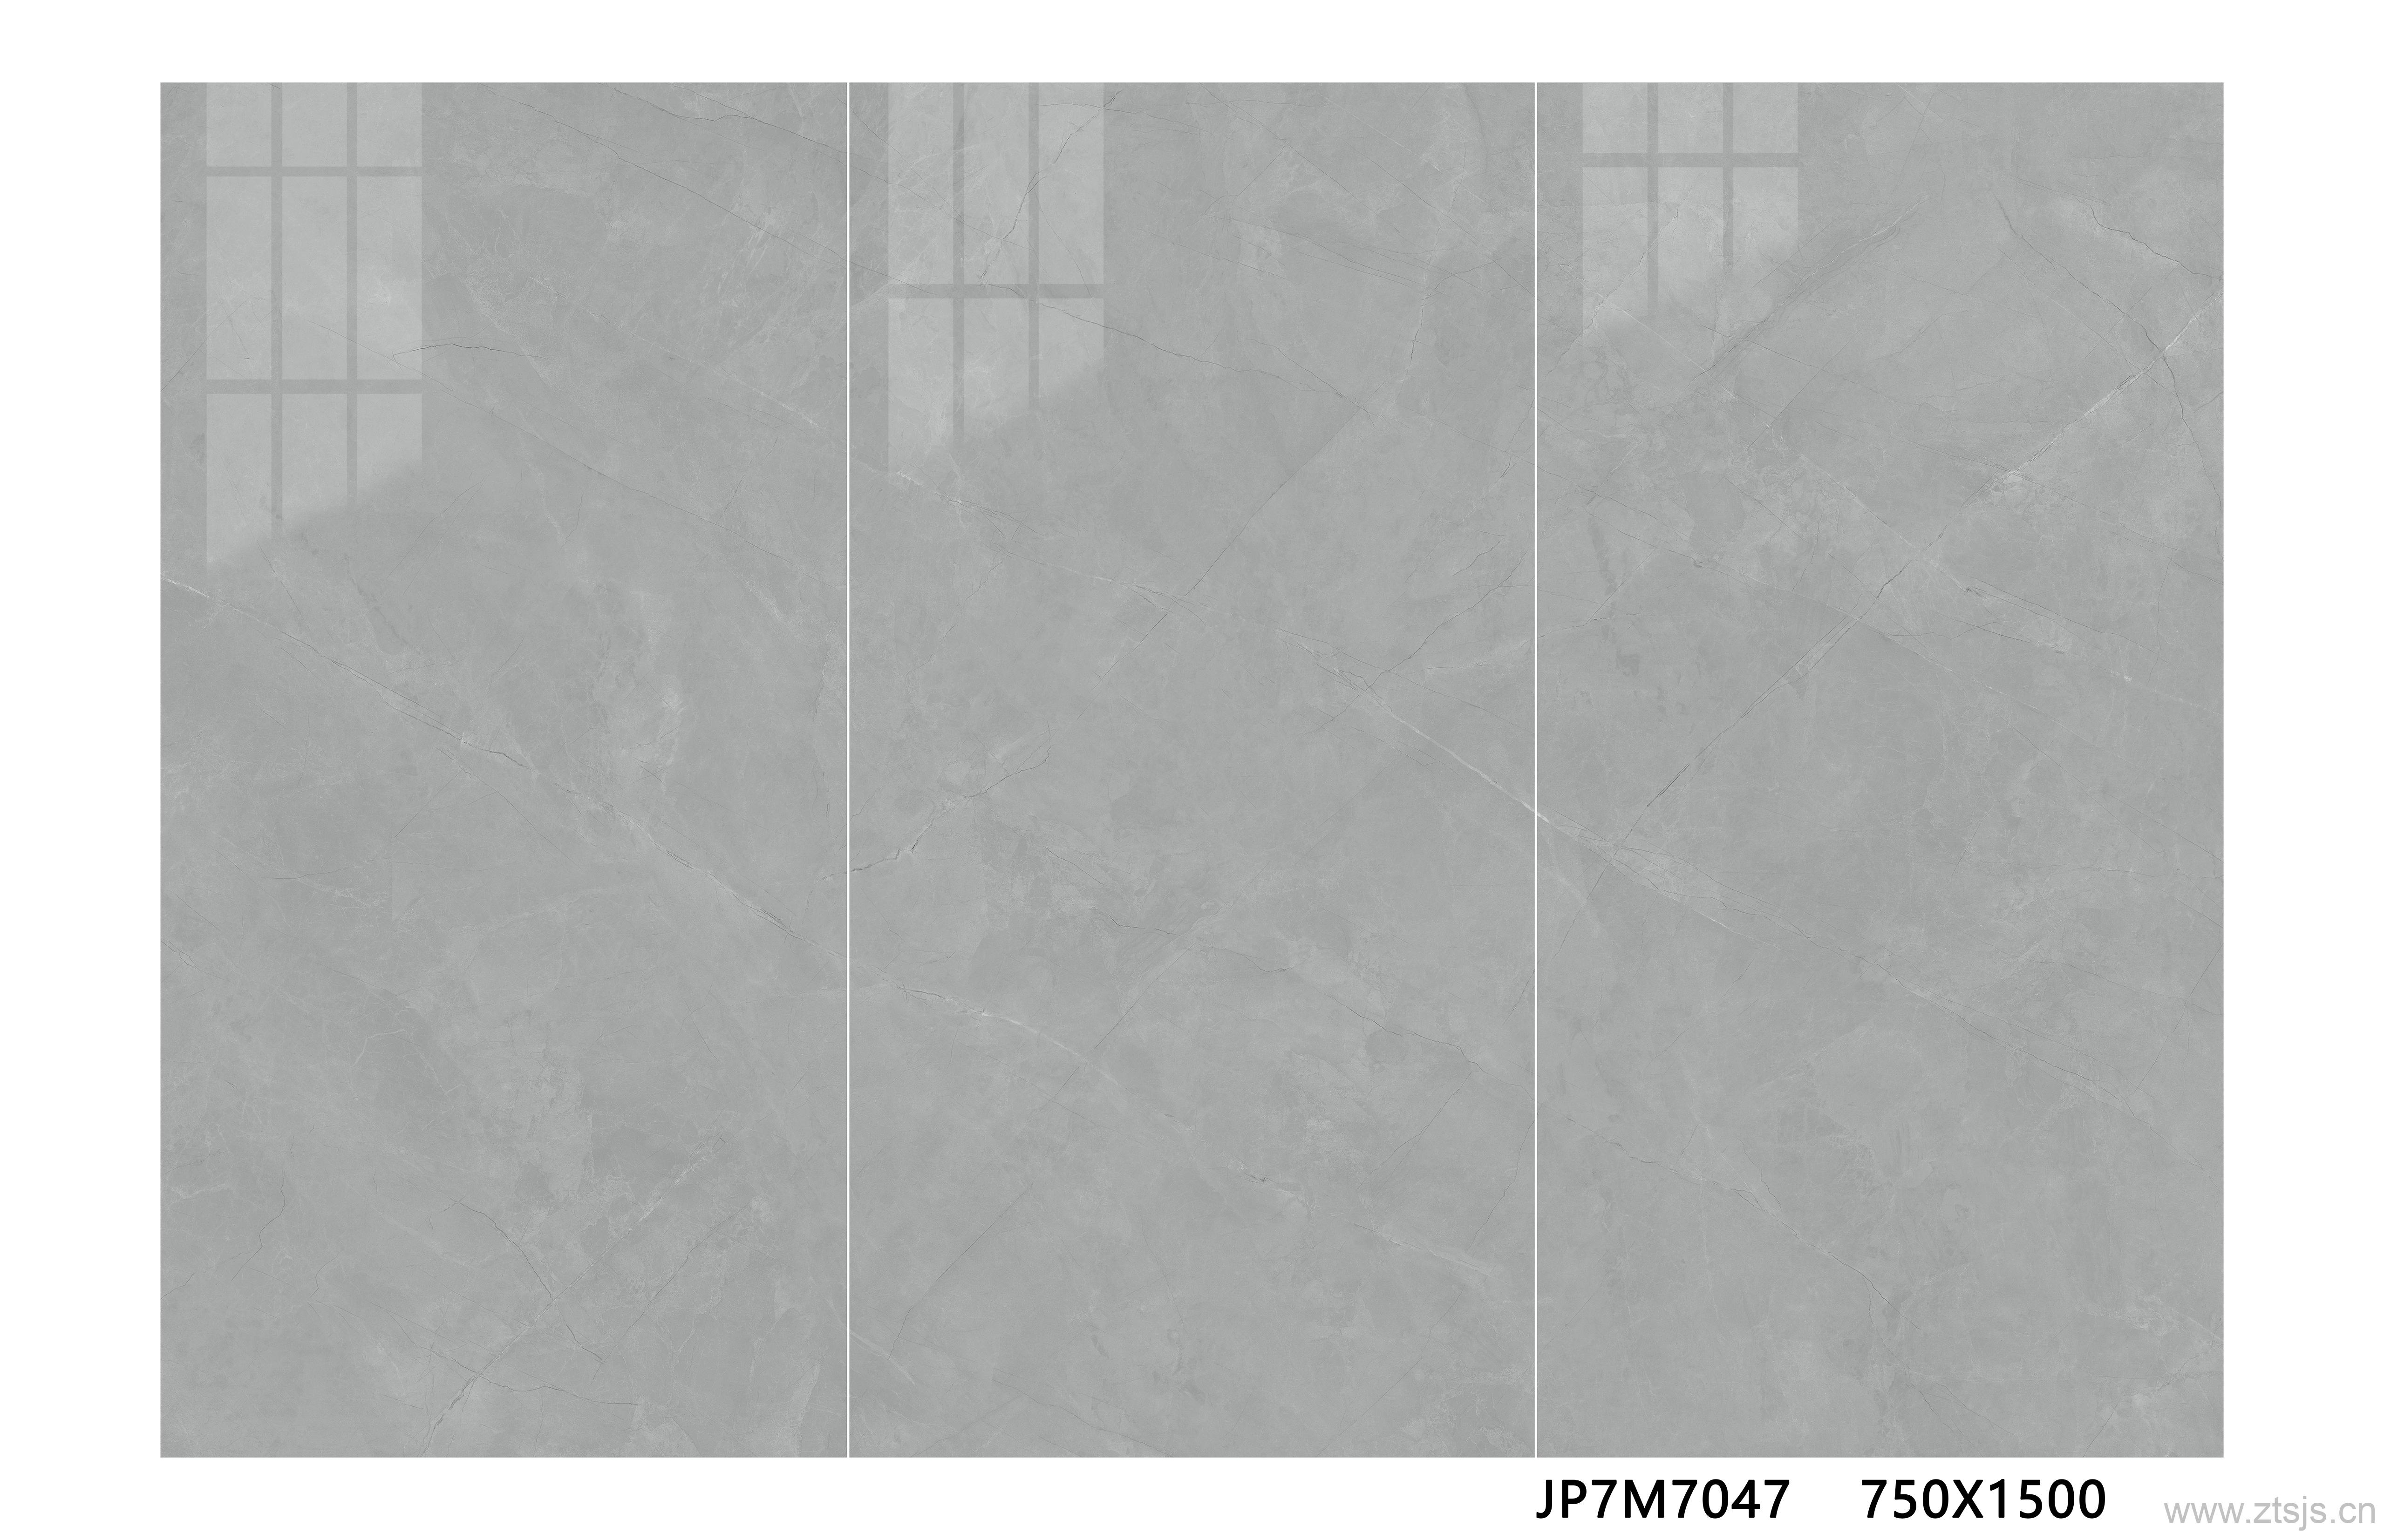 JP7M7047插图JP7M7047大理石系列、素色水泥灰、高清大板系列、高清大板系列智陶设计-喷墨文件-陶瓷喷墨-瓷砖生产文件-喷墨打印素材-背景墙素材-家装素材